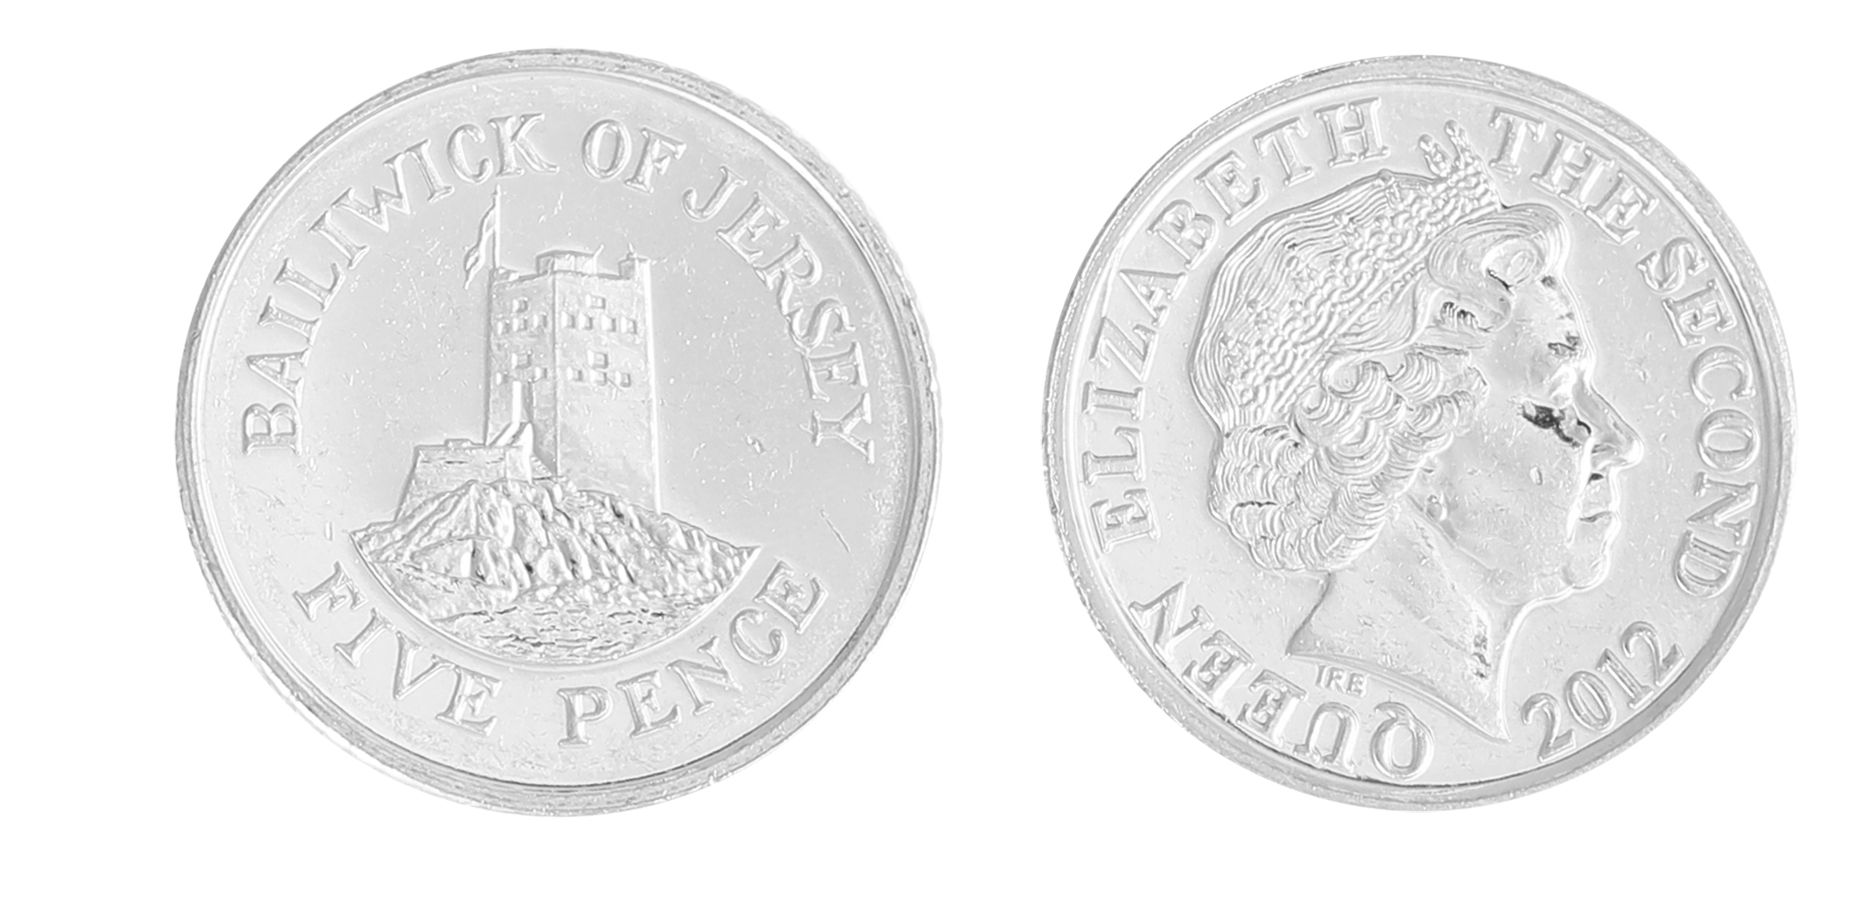 Jersey Set 8 Coins UNC 1 2 Pounds 1998-2009 1 2 5 10 20 50 Pence 